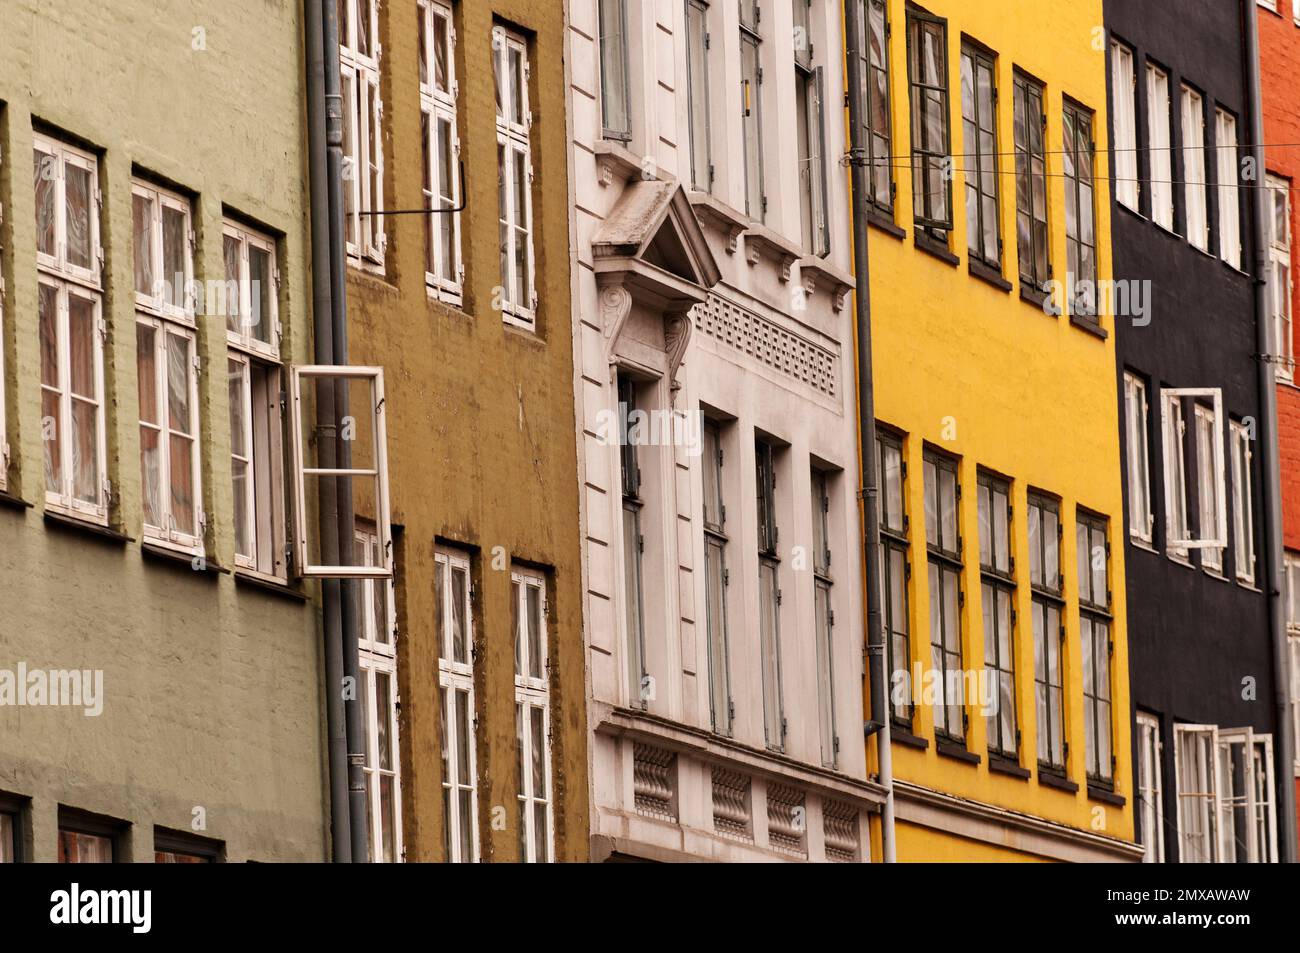 Facades of old buildings in Copenhagen. Stock Photo